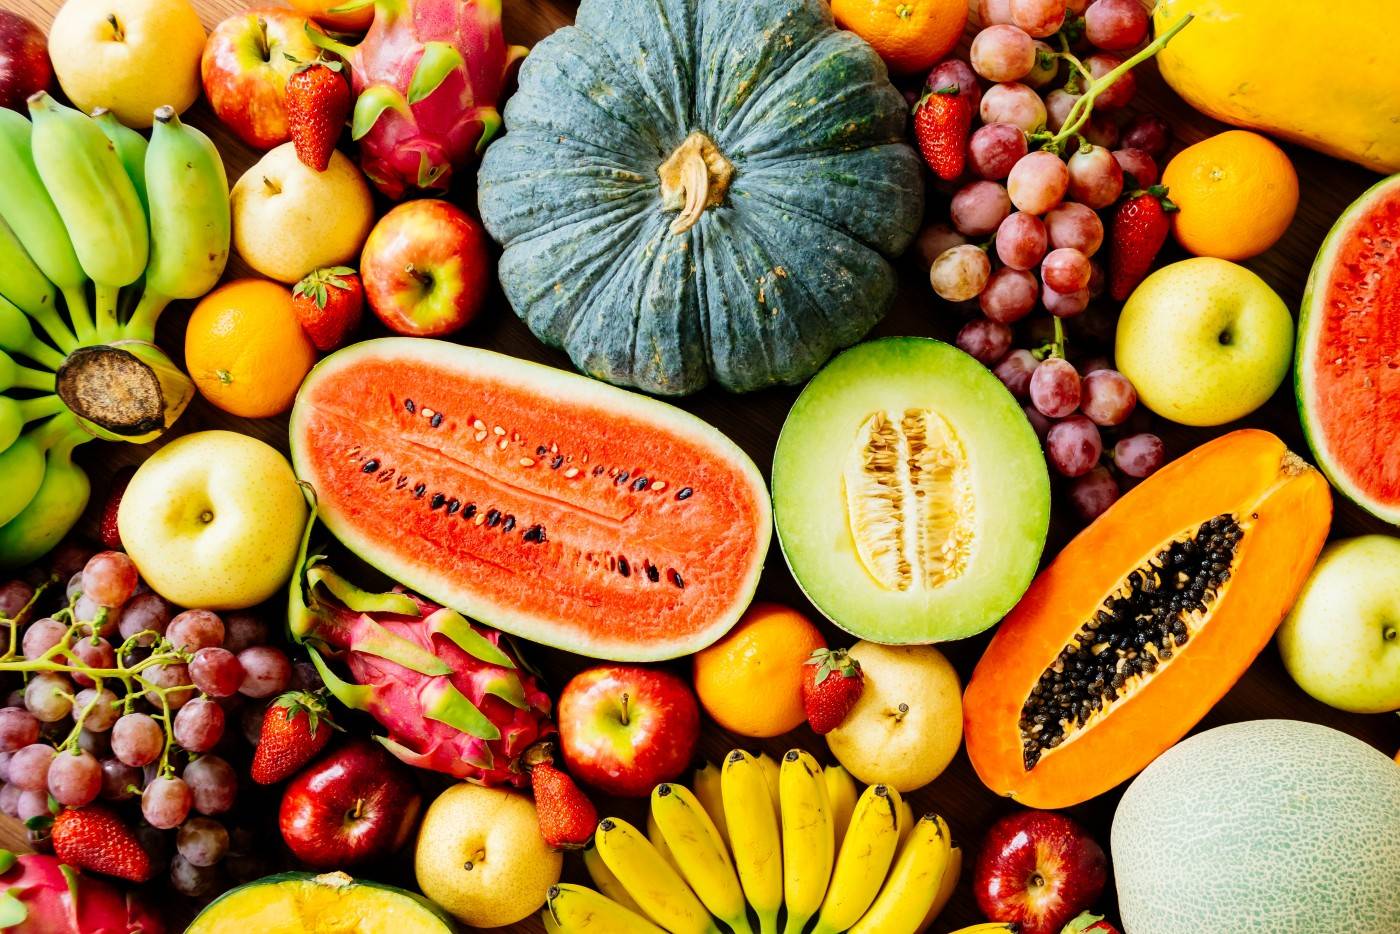 秋天这些水果一定不要吃了!吃得越多,身体越差!